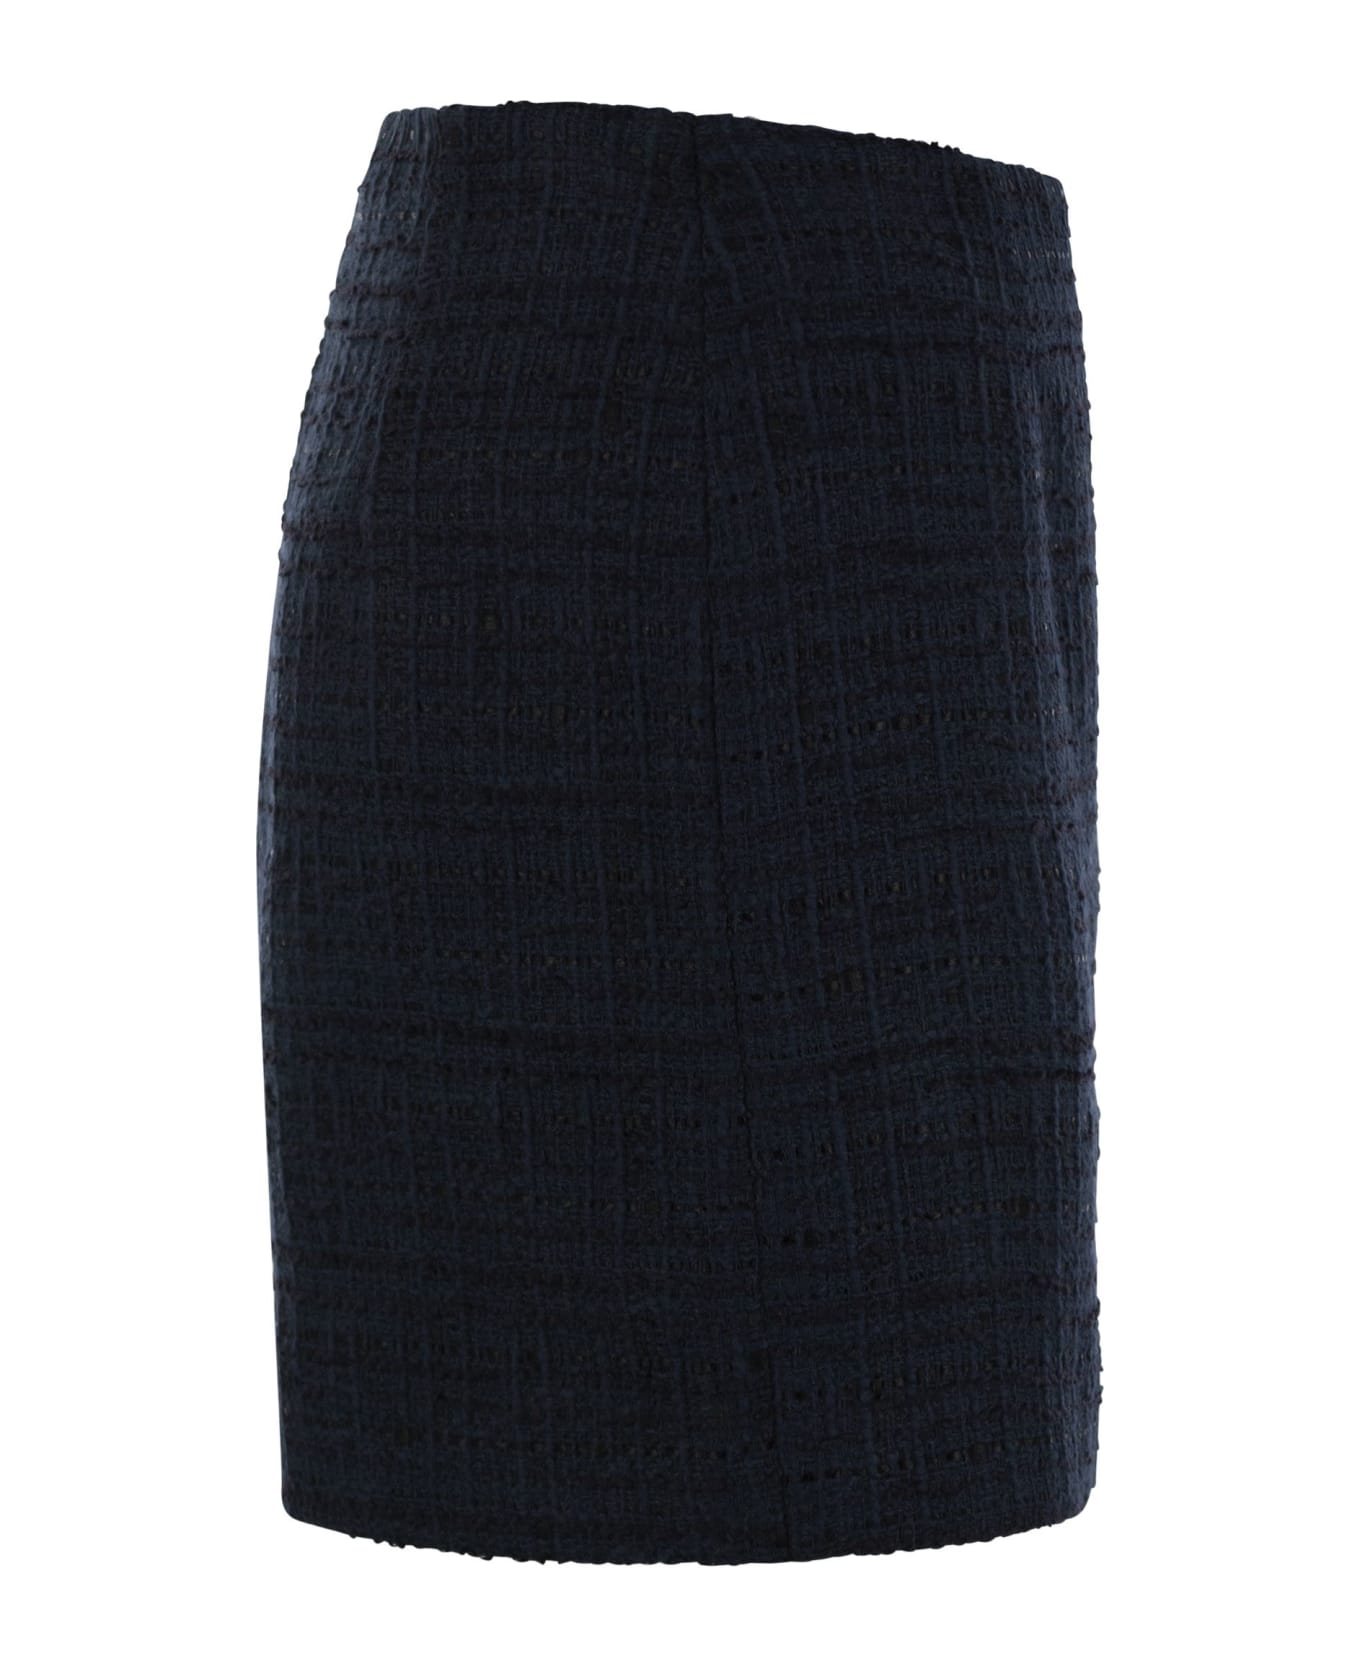 Tagliatore Tweed Short Skirt - Blue